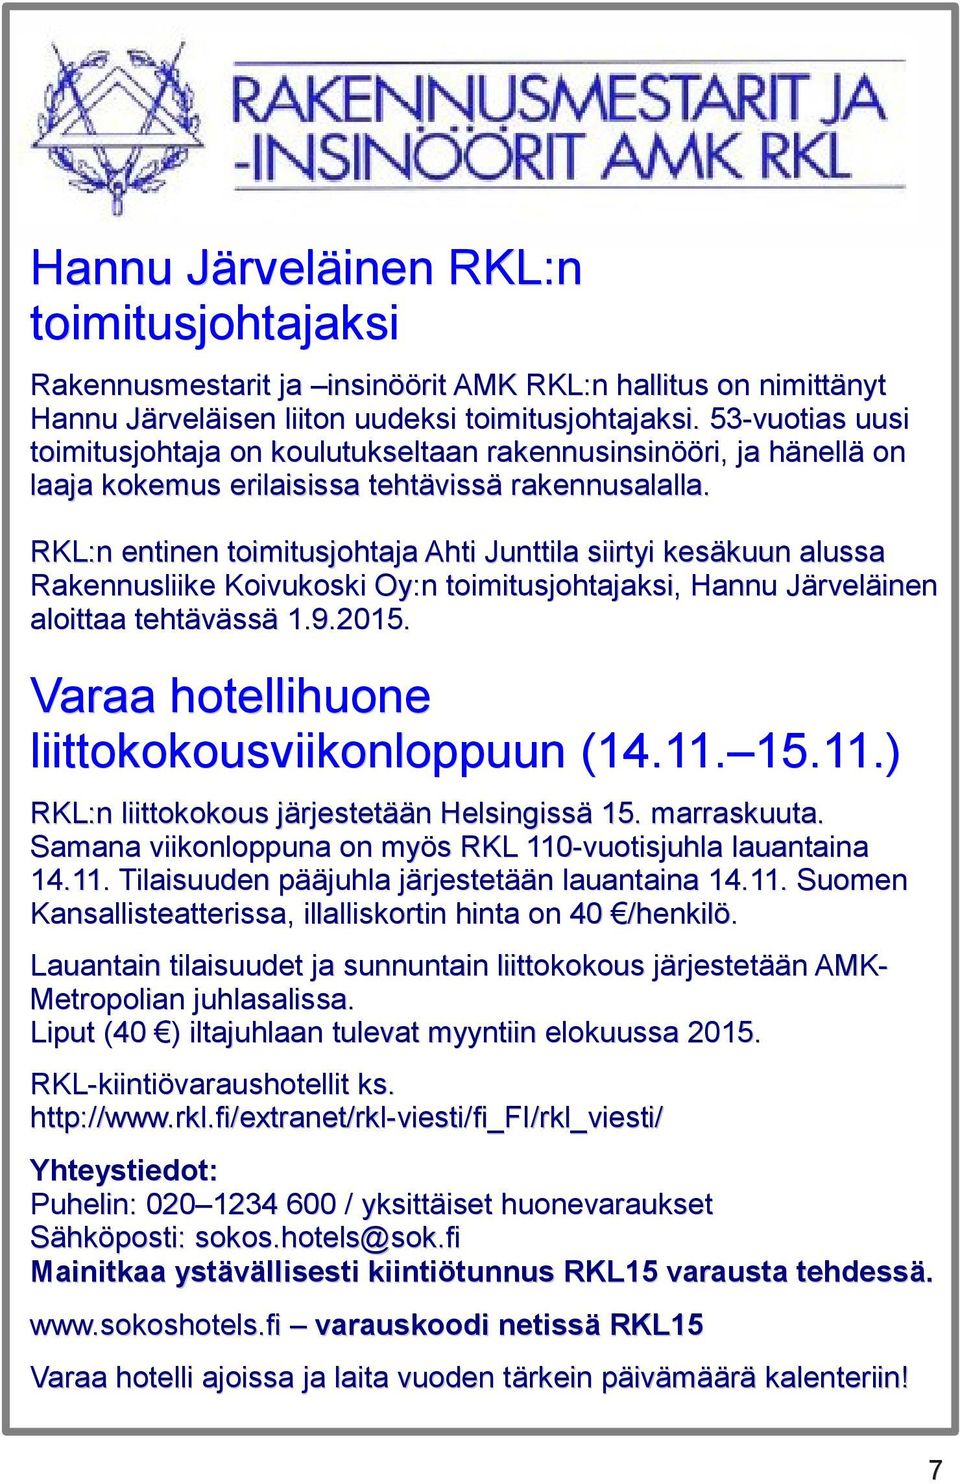 RKL:n entinen toimitusjohtaja Ahti Junttila siirtyi kesäkuun alussa Rakennusliike Koivukoski Oy:n toimitusjohtajaksi, Hannu Järveläinen aloittaa tehtävässä 1.9.2015.